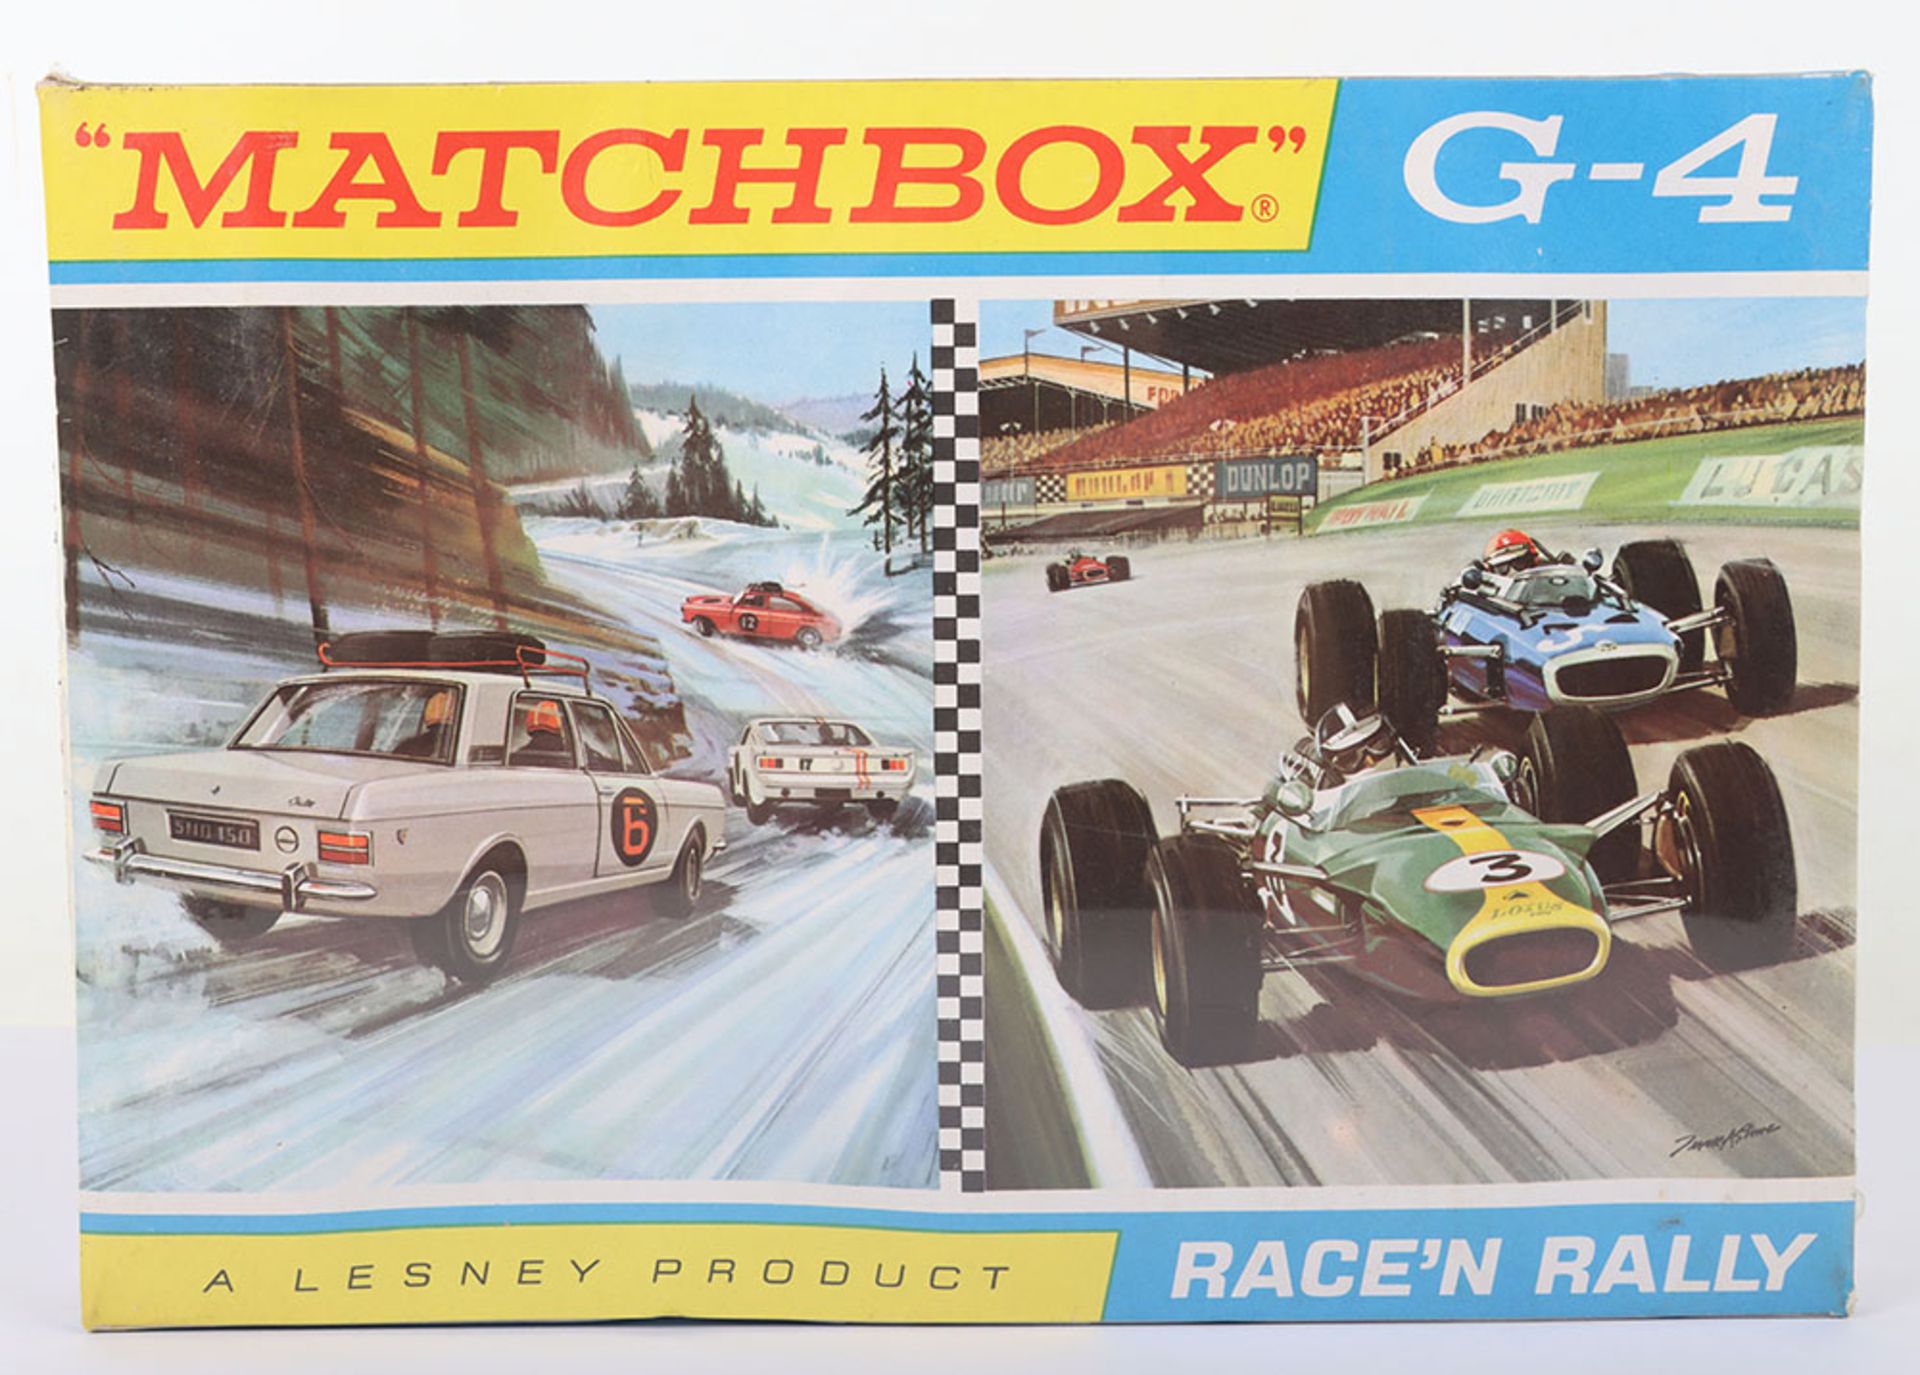 Matchbox Lesney Regular Wheels G-4 Race’n Rally Gift Set - Image 2 of 5